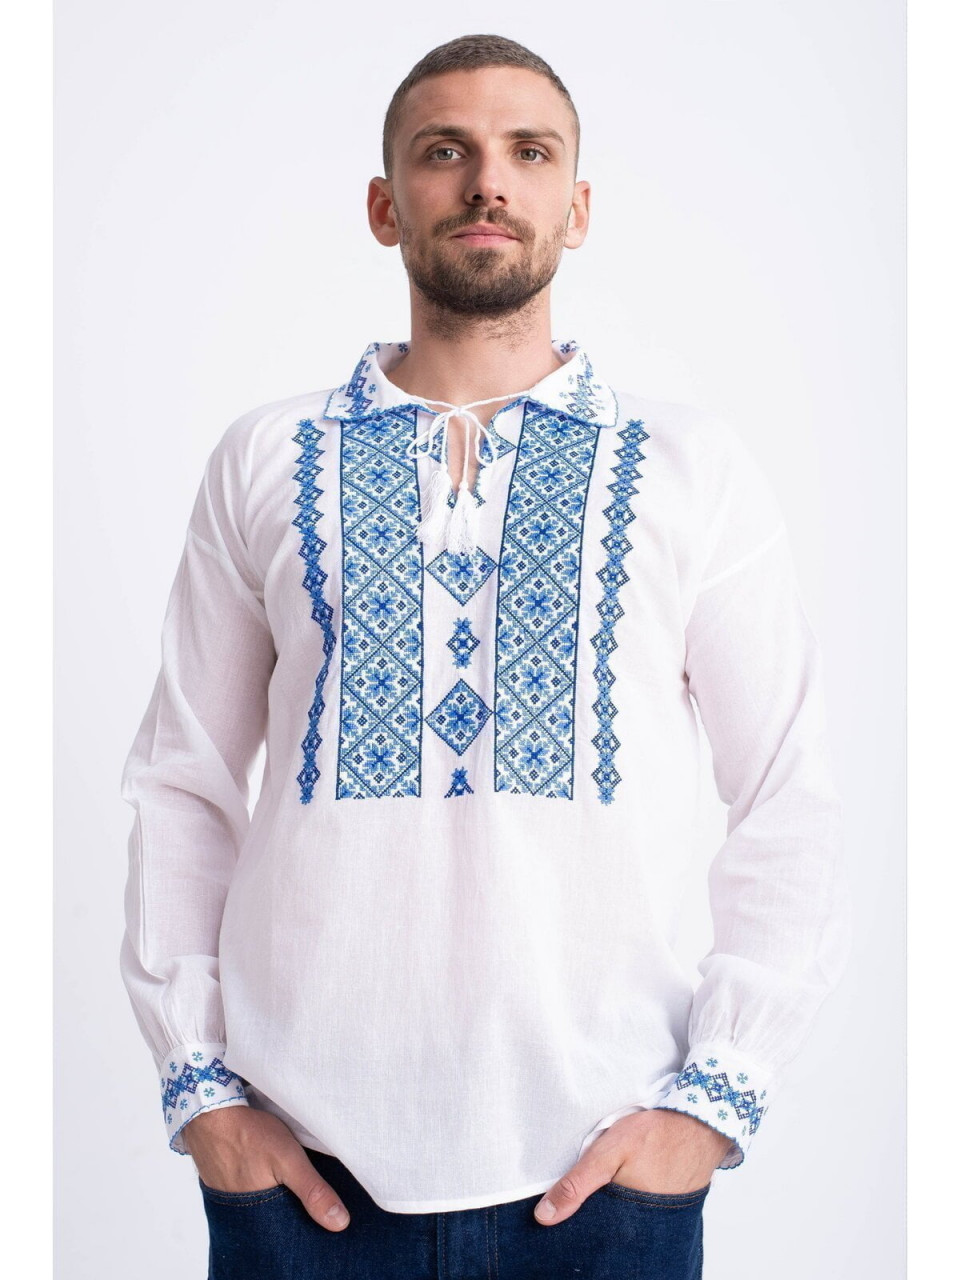 Bluza traditionala din bumbac alb cu broderie albastra pentru barbat